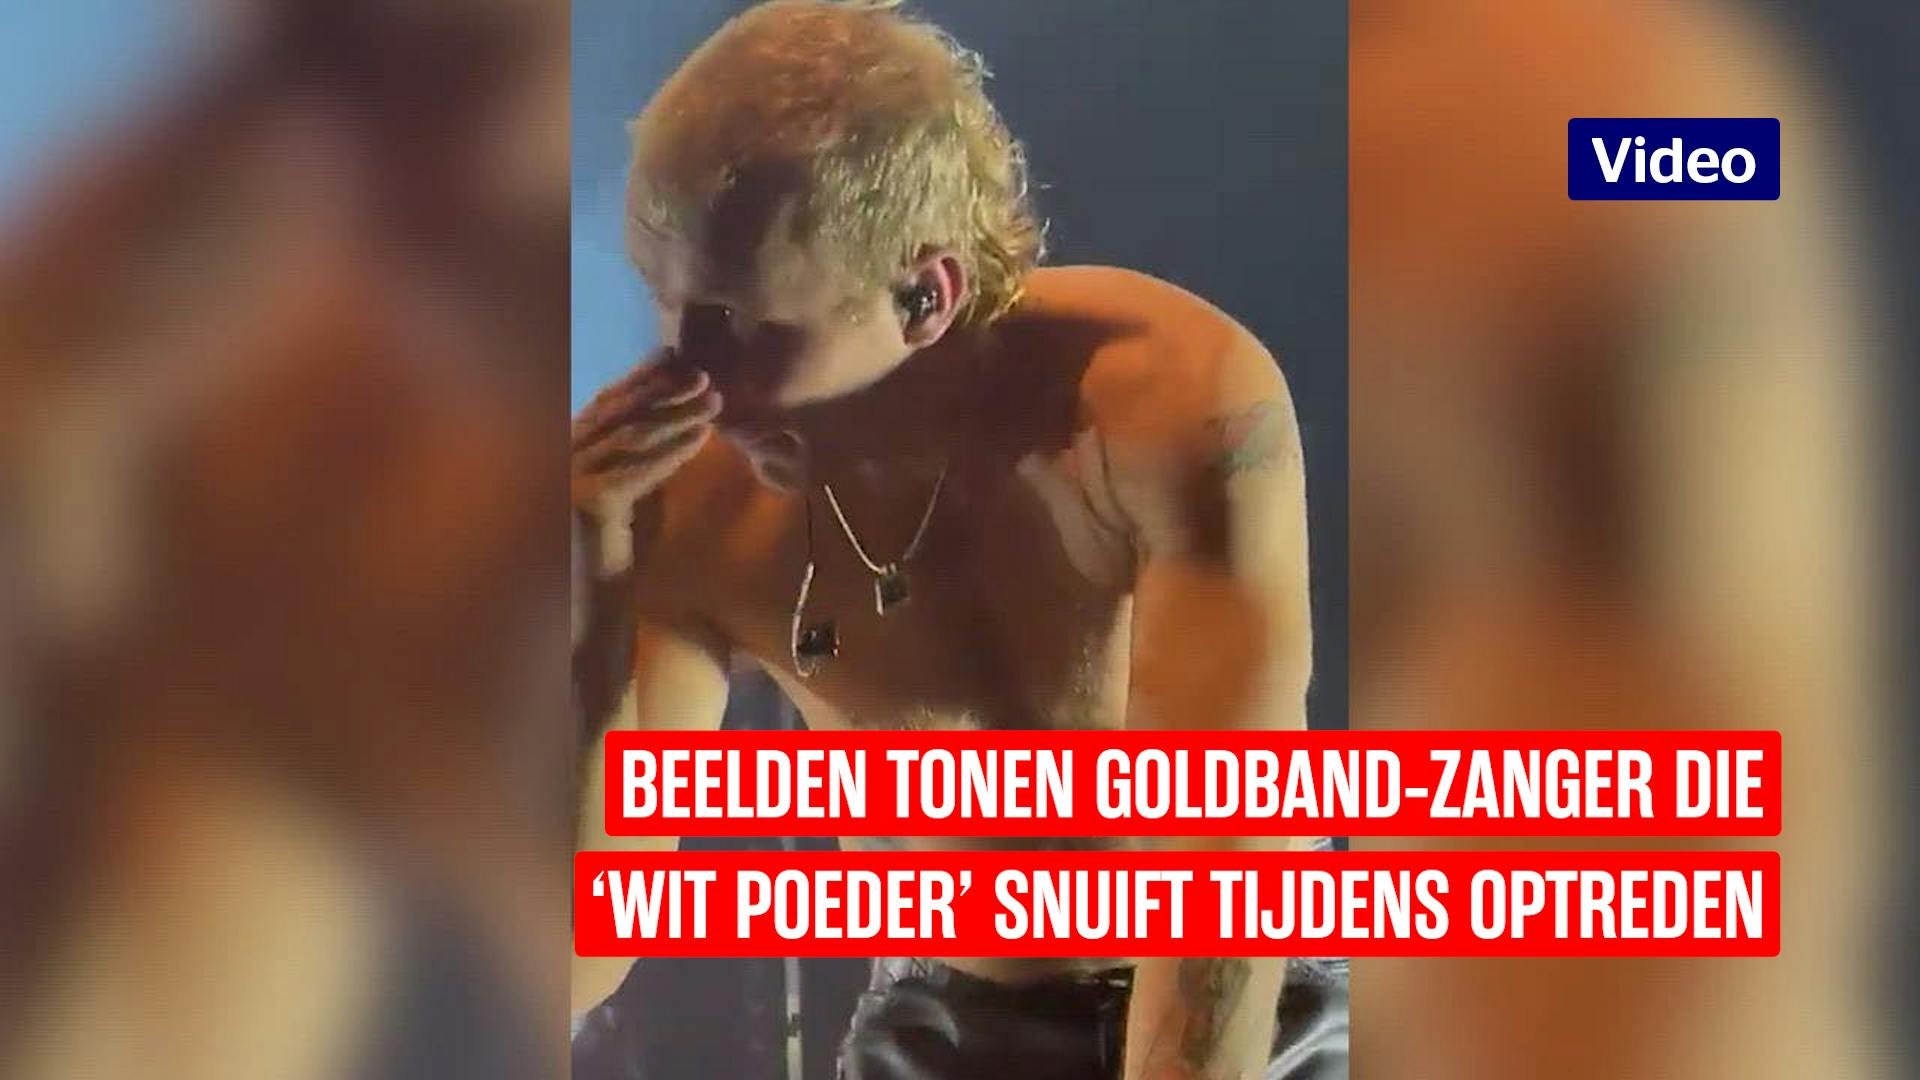 Goldband-zanger biedt excuses aan voor snuiven op het podium